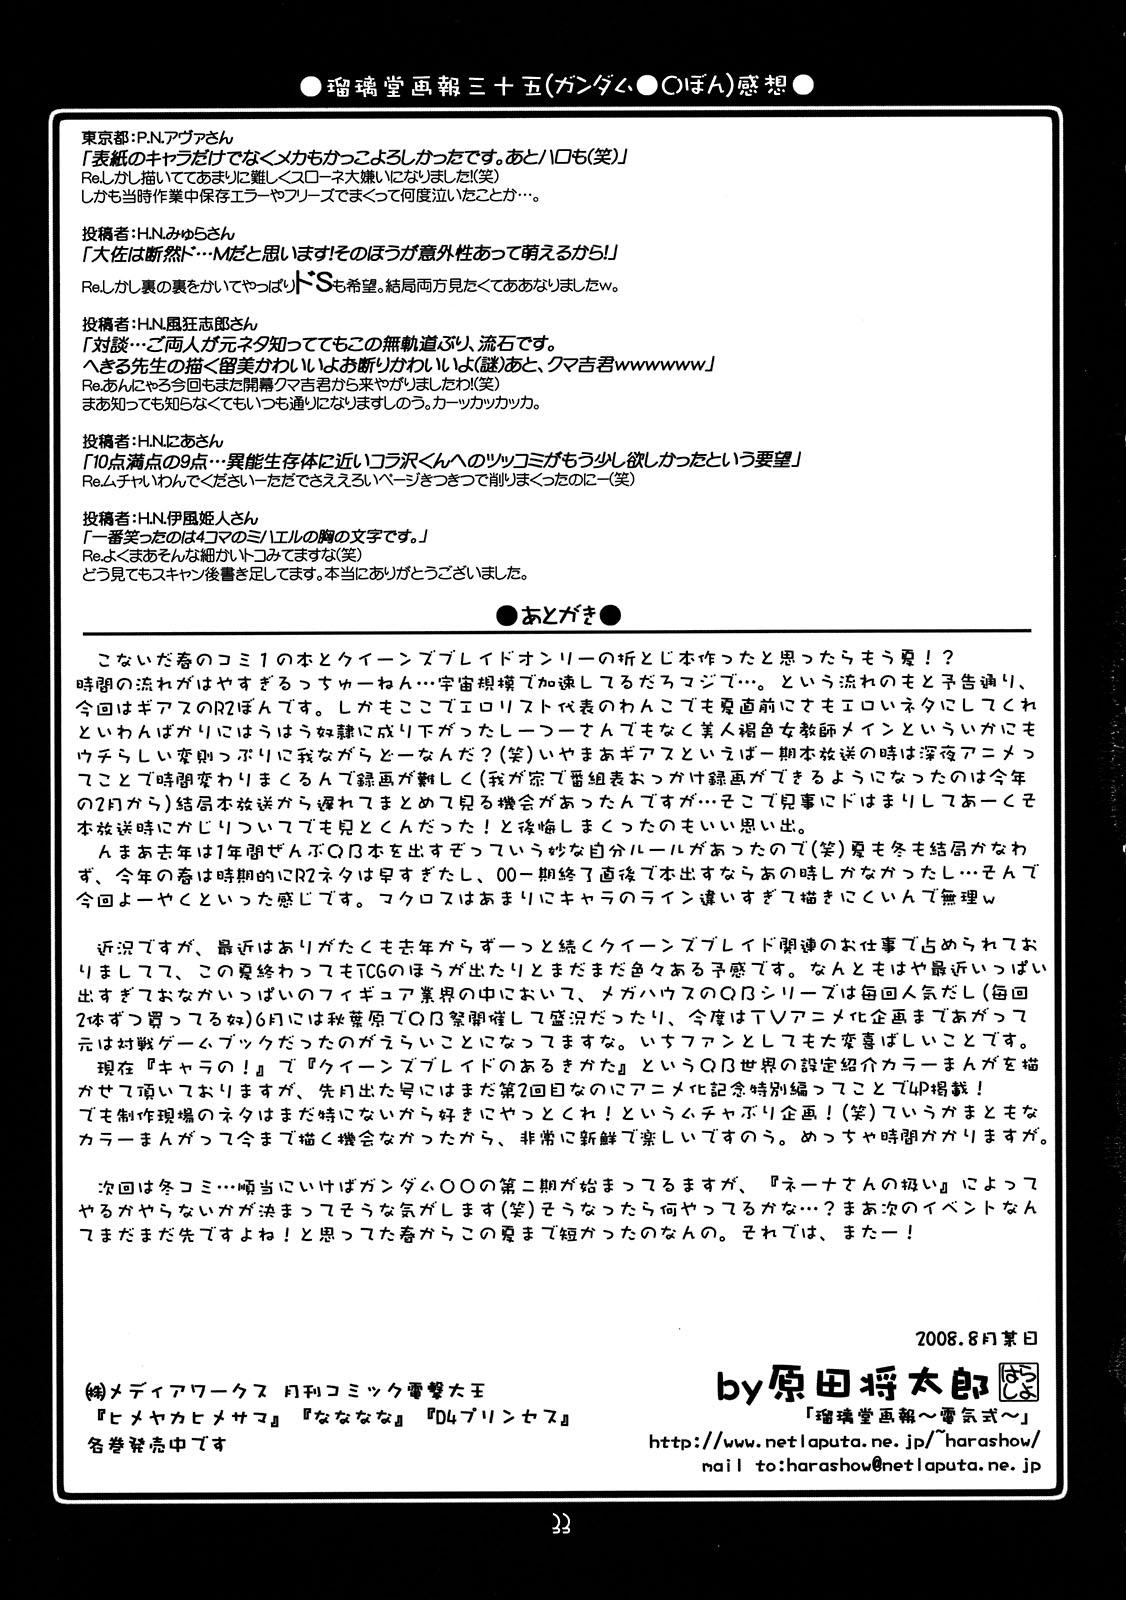 Teenfuns Ruridou Gahou CODE 36 - Code geass Doll - Page 33